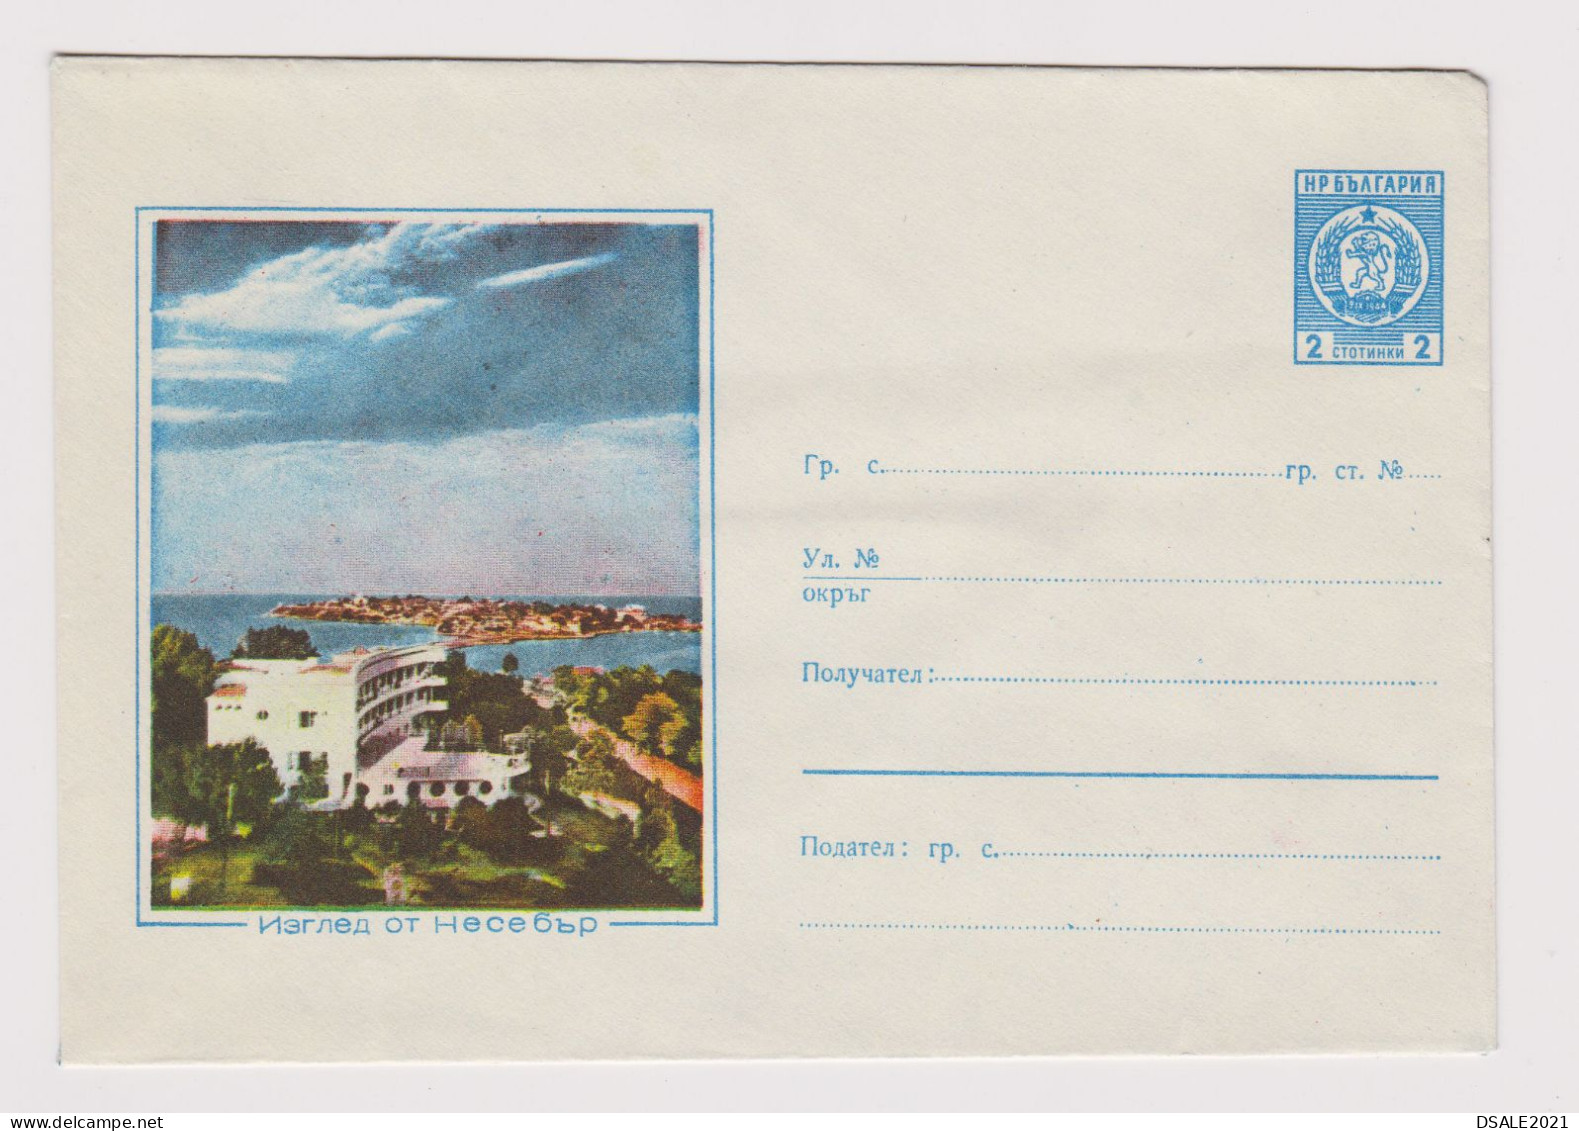 Bulgaria Bulgarien Bulgarie 1962 Bulgarian Postal Stationery Cover PSE, Entier, Unused, NESEBAR (55820) - Omslagen